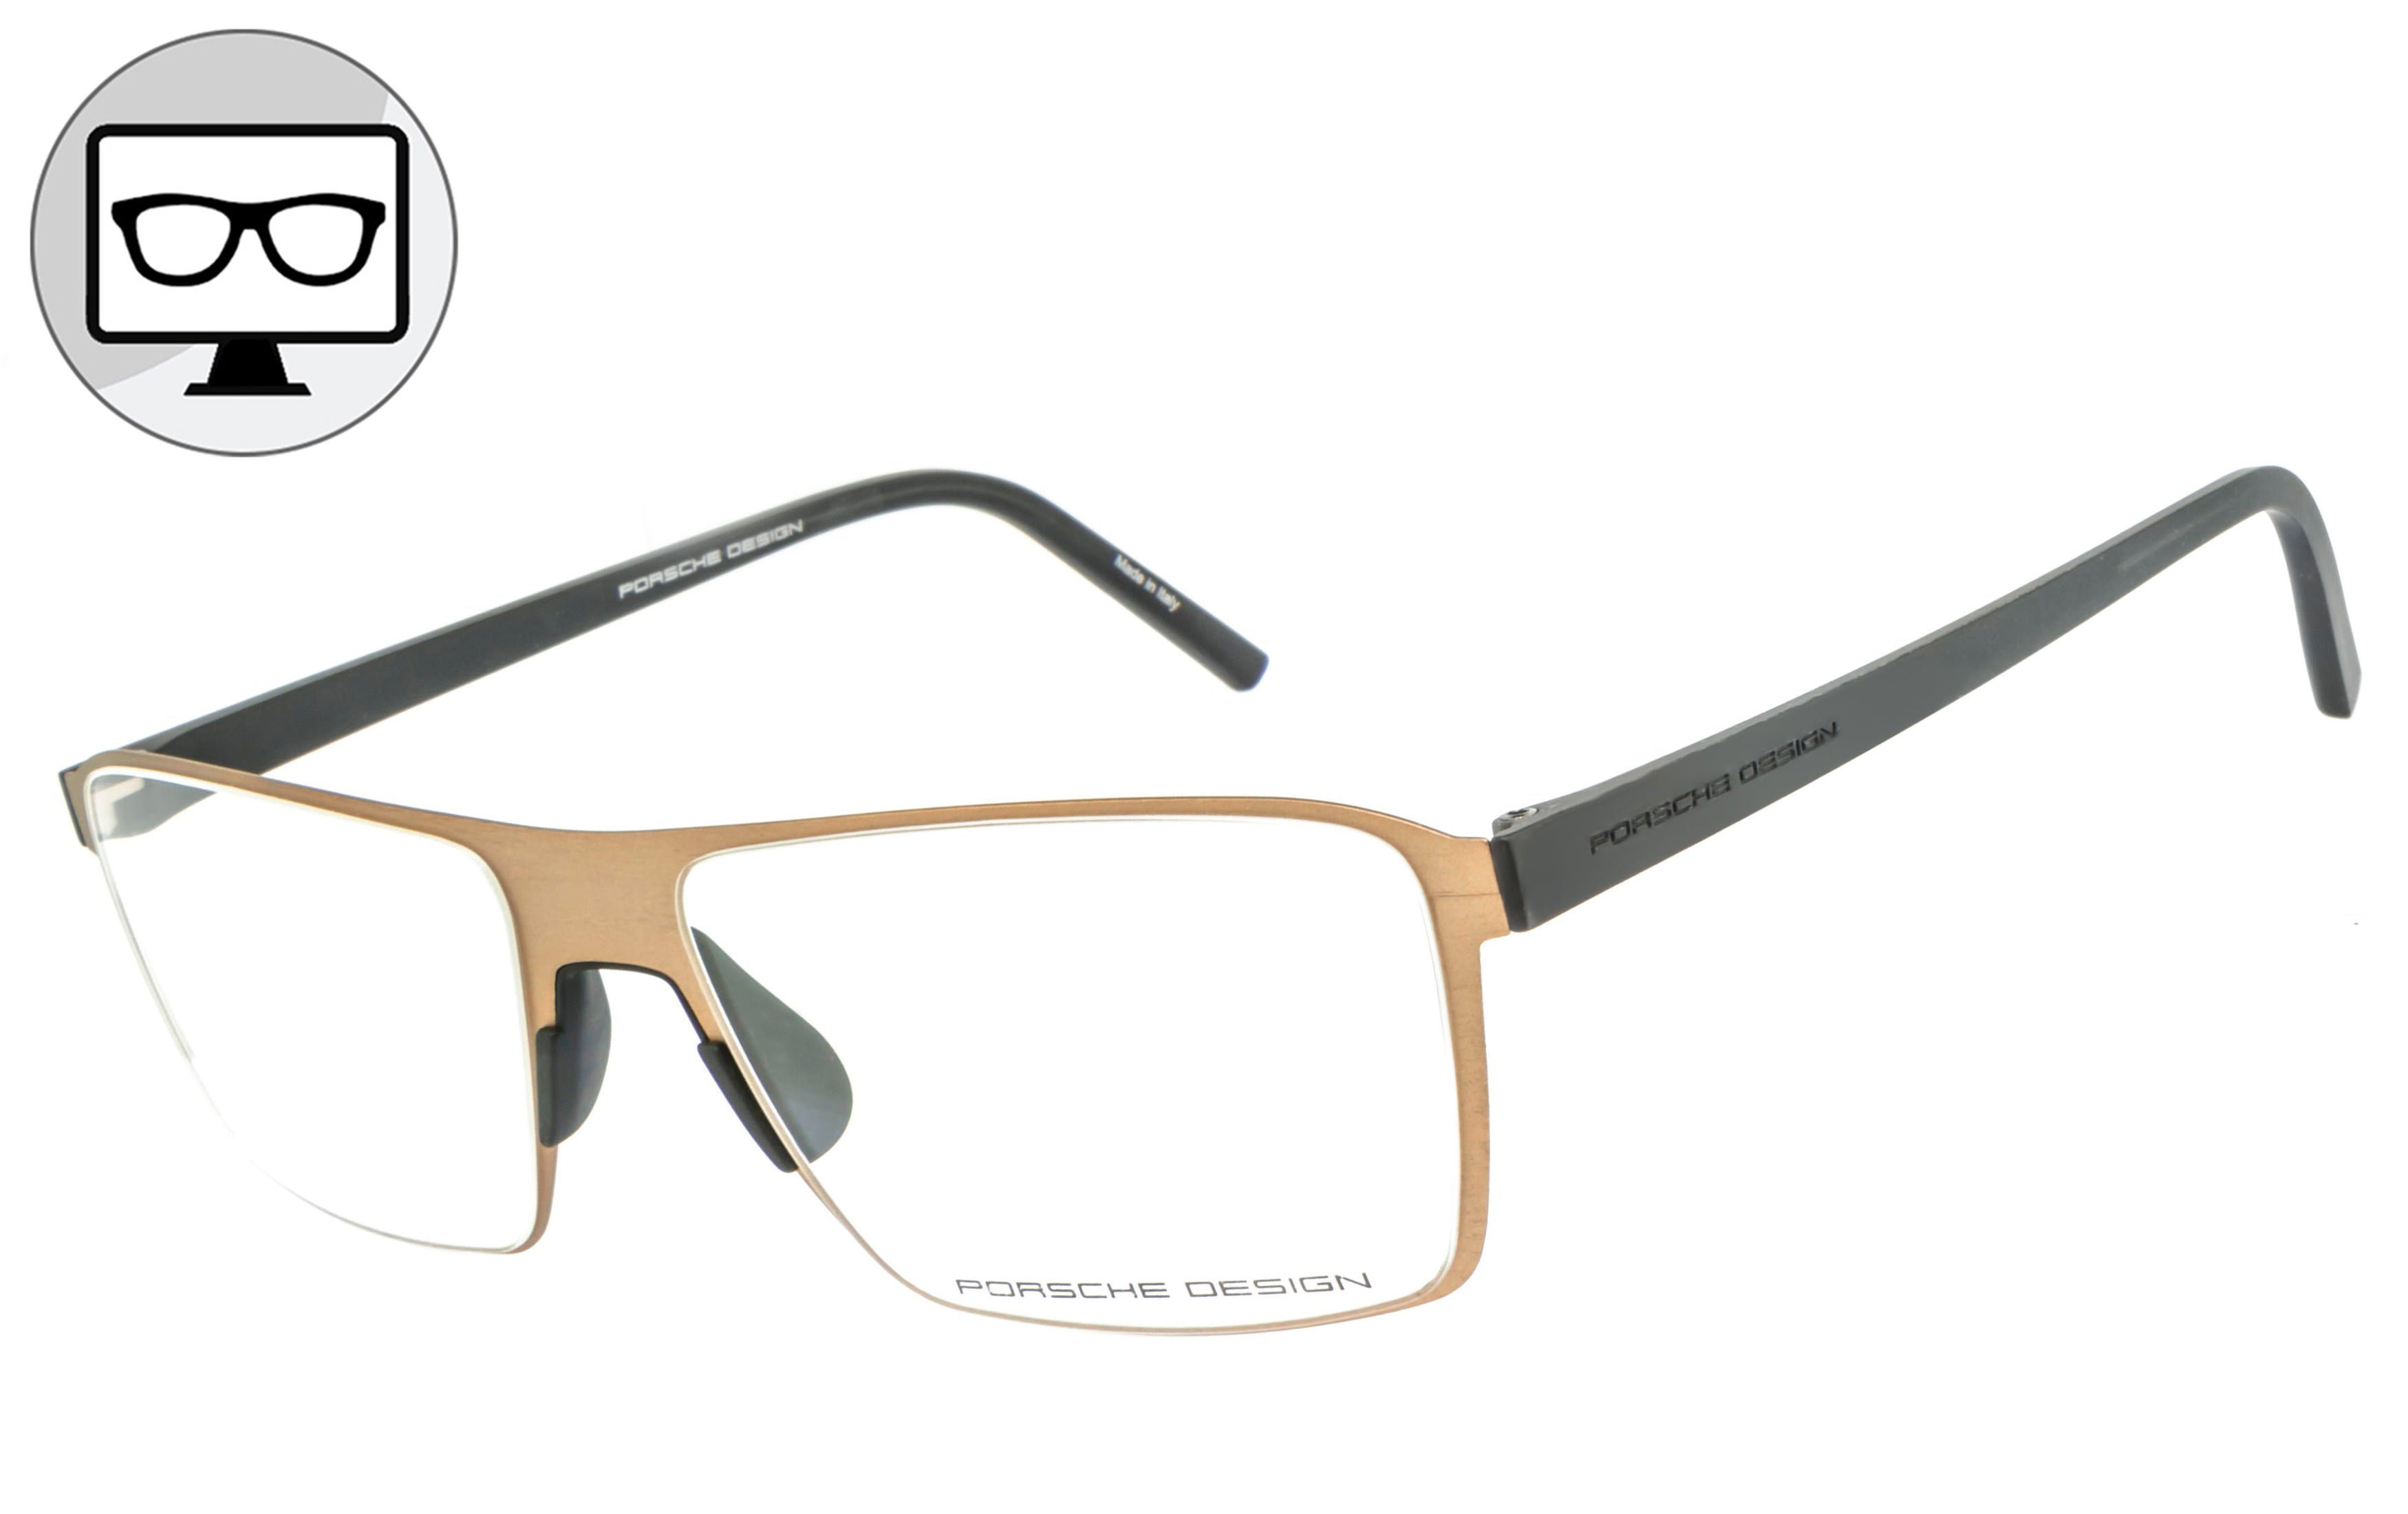 Bildschirmbrille, Design Blaulicht Brille, Brille, Blaulichtfilter Bürobrille, PORSCHE Sehstärke ohne Brille Gamingbrille,